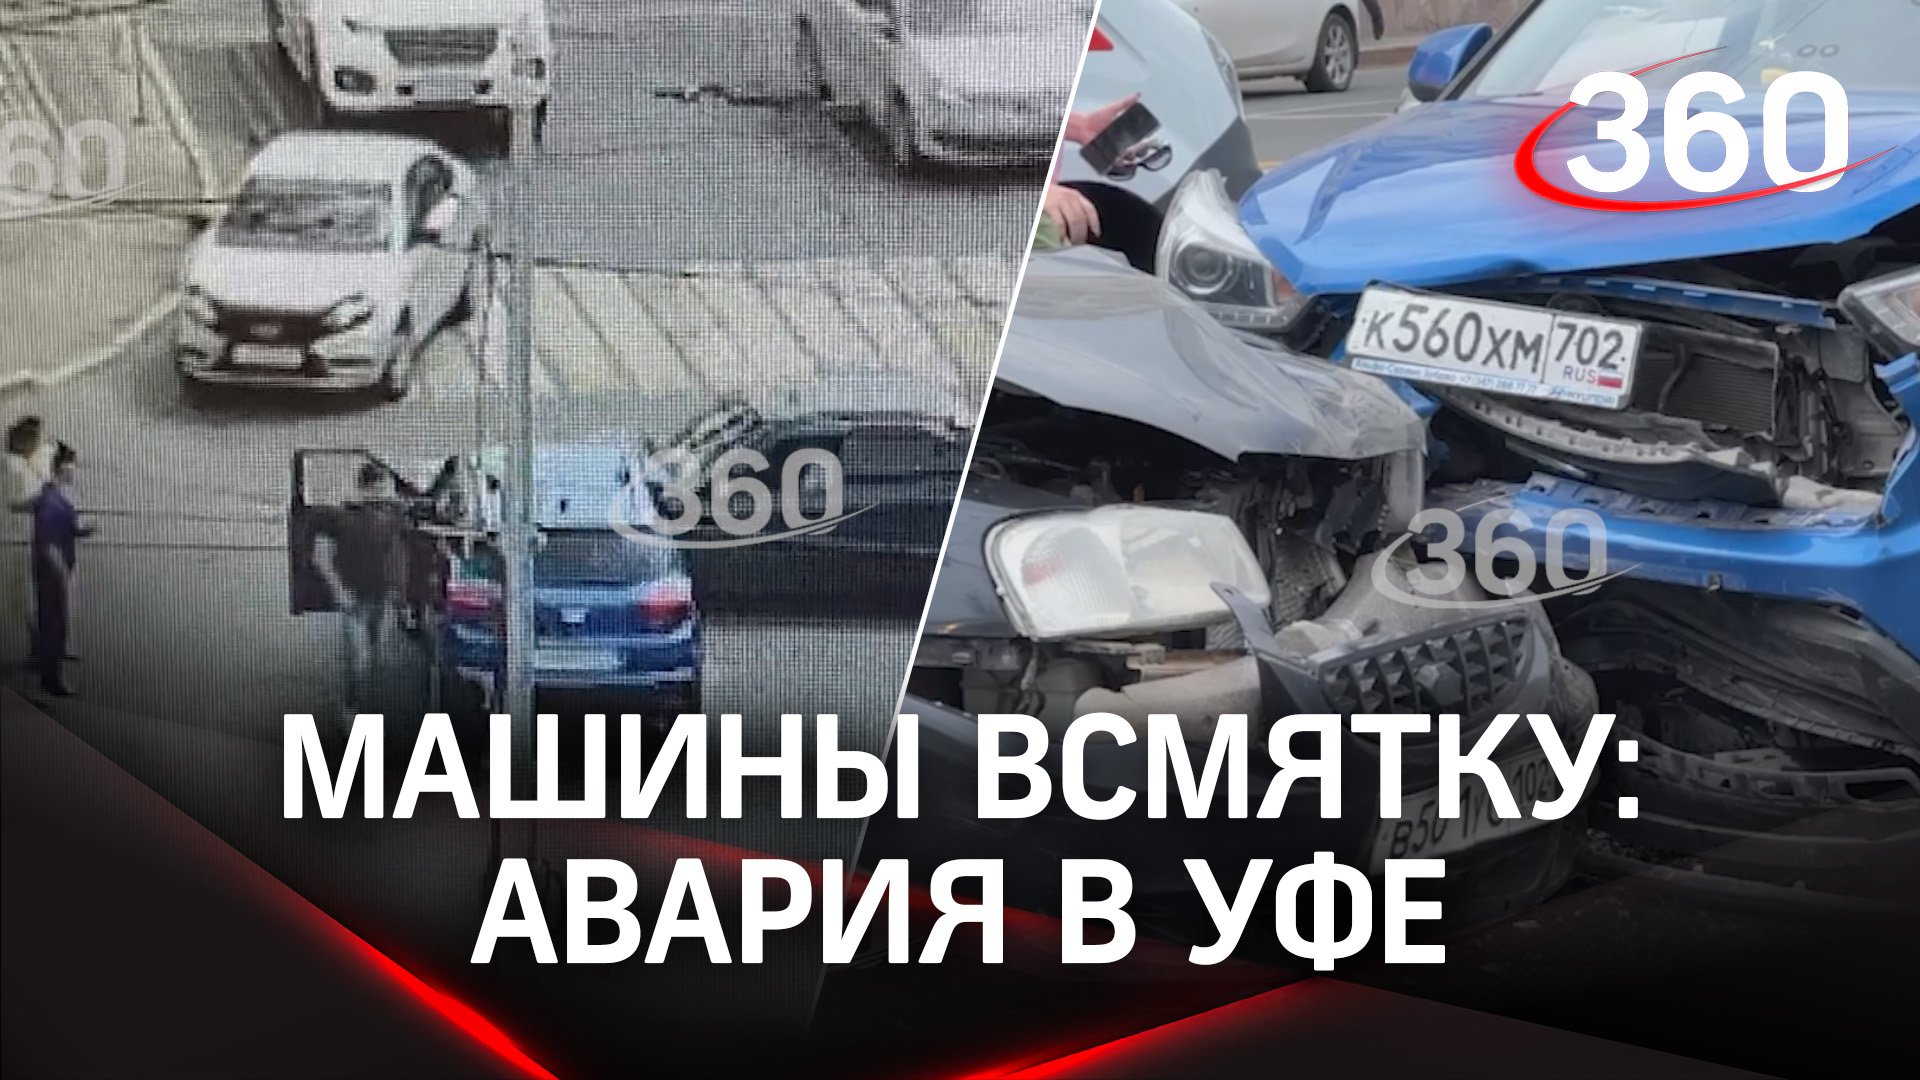 Машины всмятку: дочь башкирского чиновника устроила аварию в Уфе. Первые кадры с места